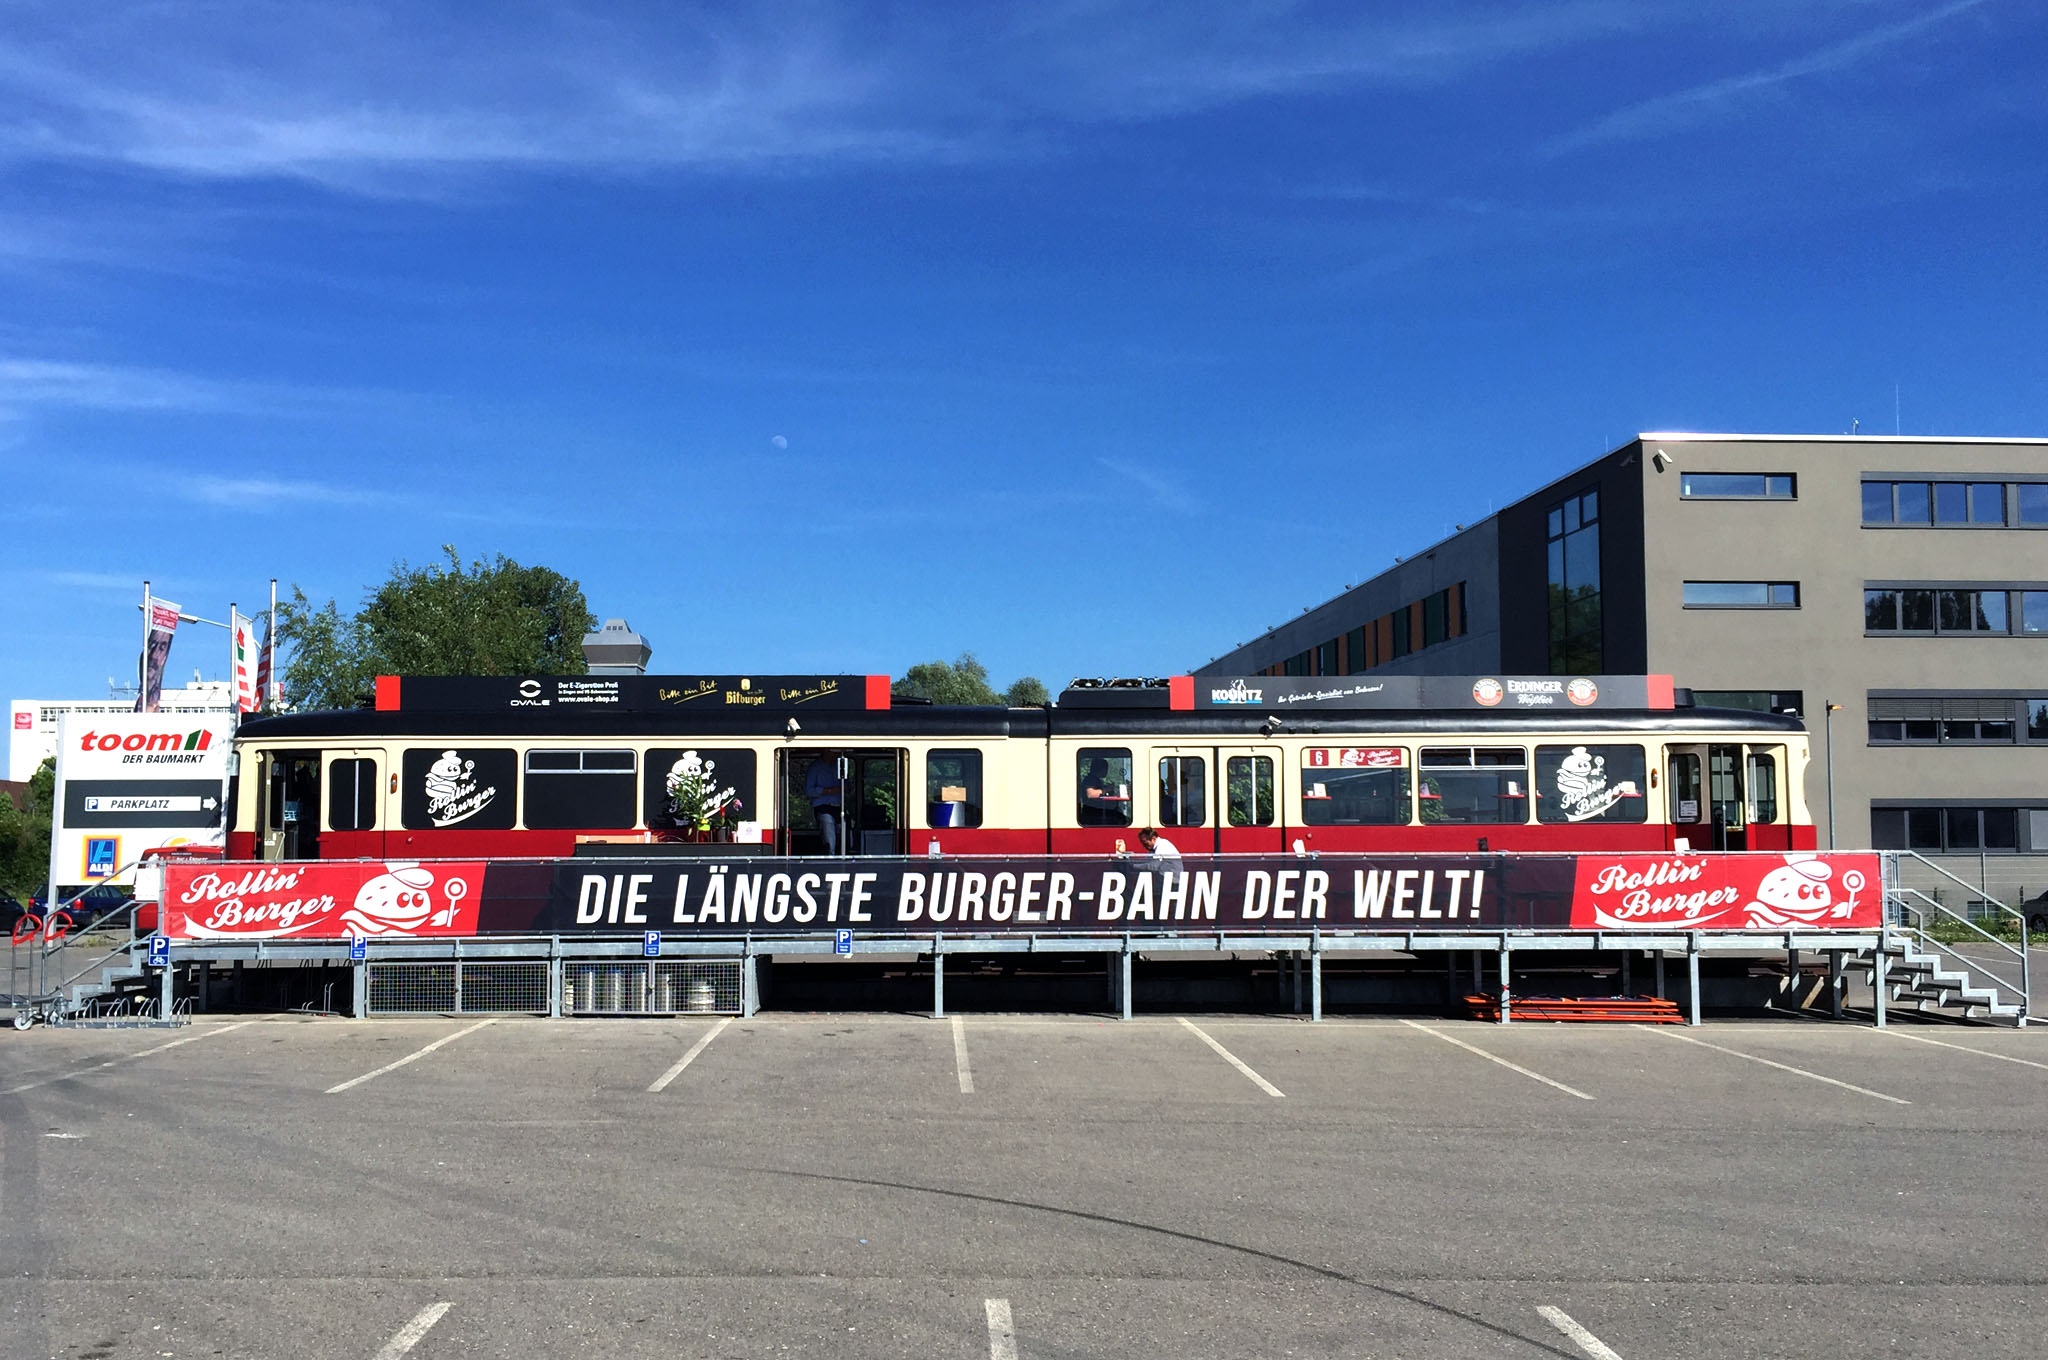 Die längste Burger-Bahn der Welt? Burgermania bei Rollin‘ Burger in Konstanz.